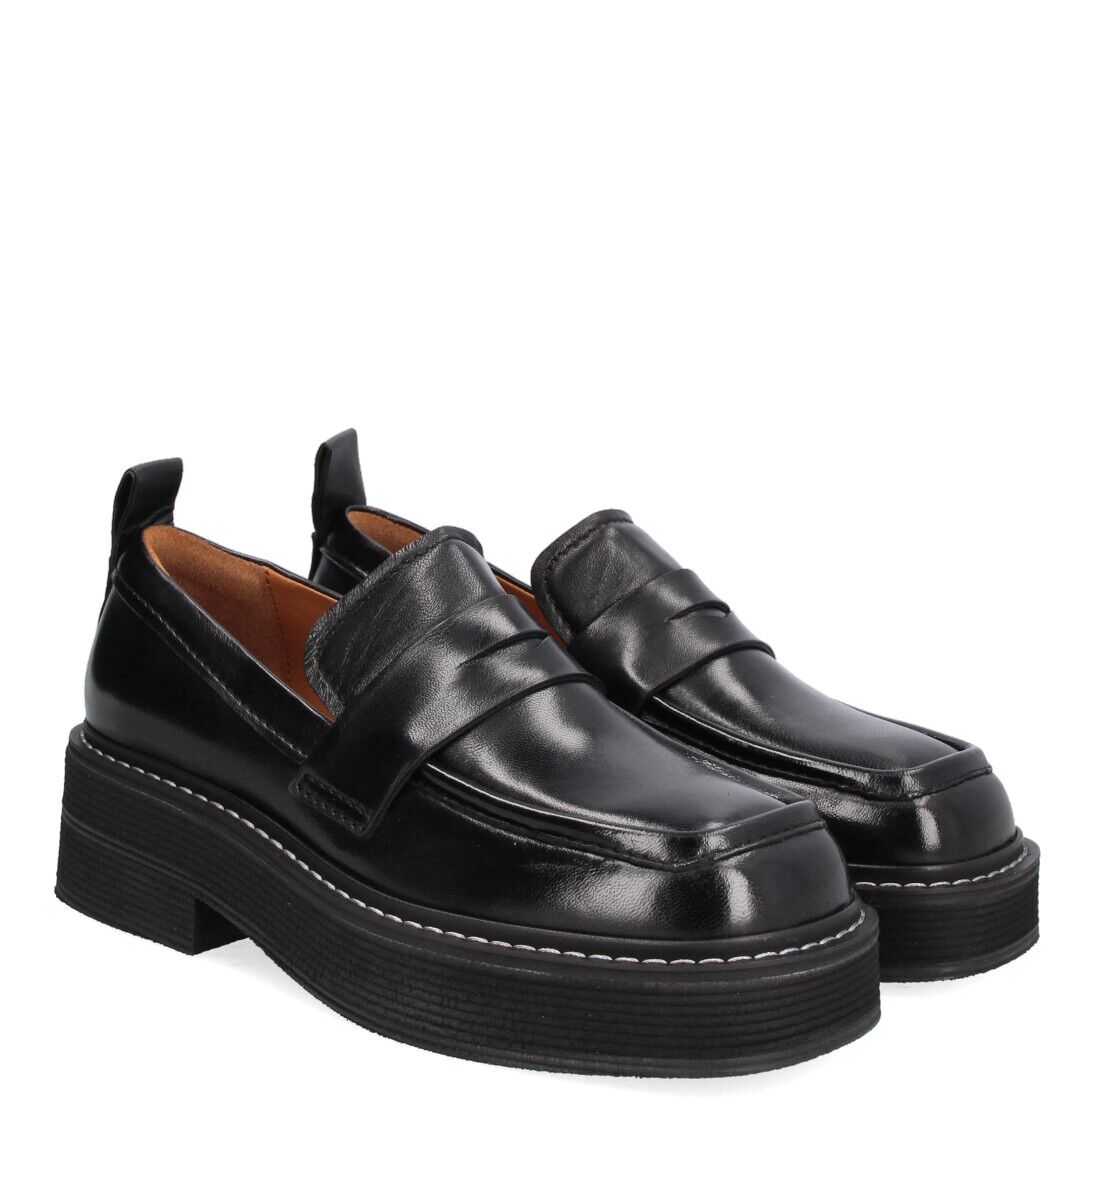 A1550 070 Billi Bi Loafer Schuhe Schuh Leder Leather (4)